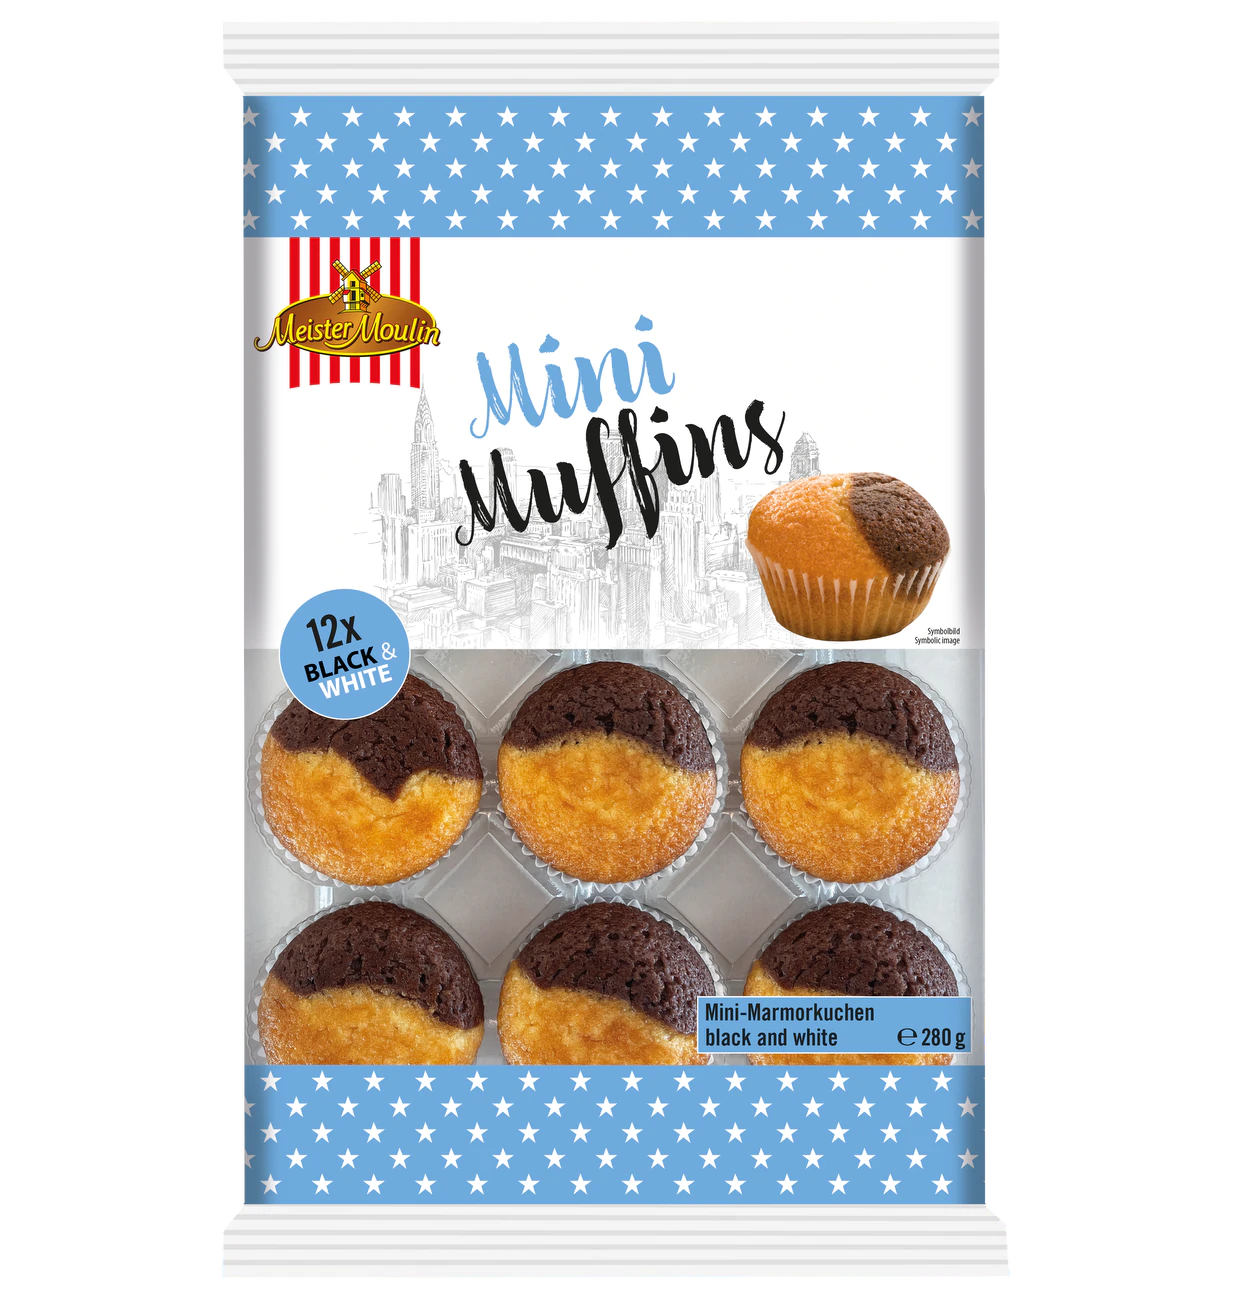 Mini muffins black & white (14 x 280g)